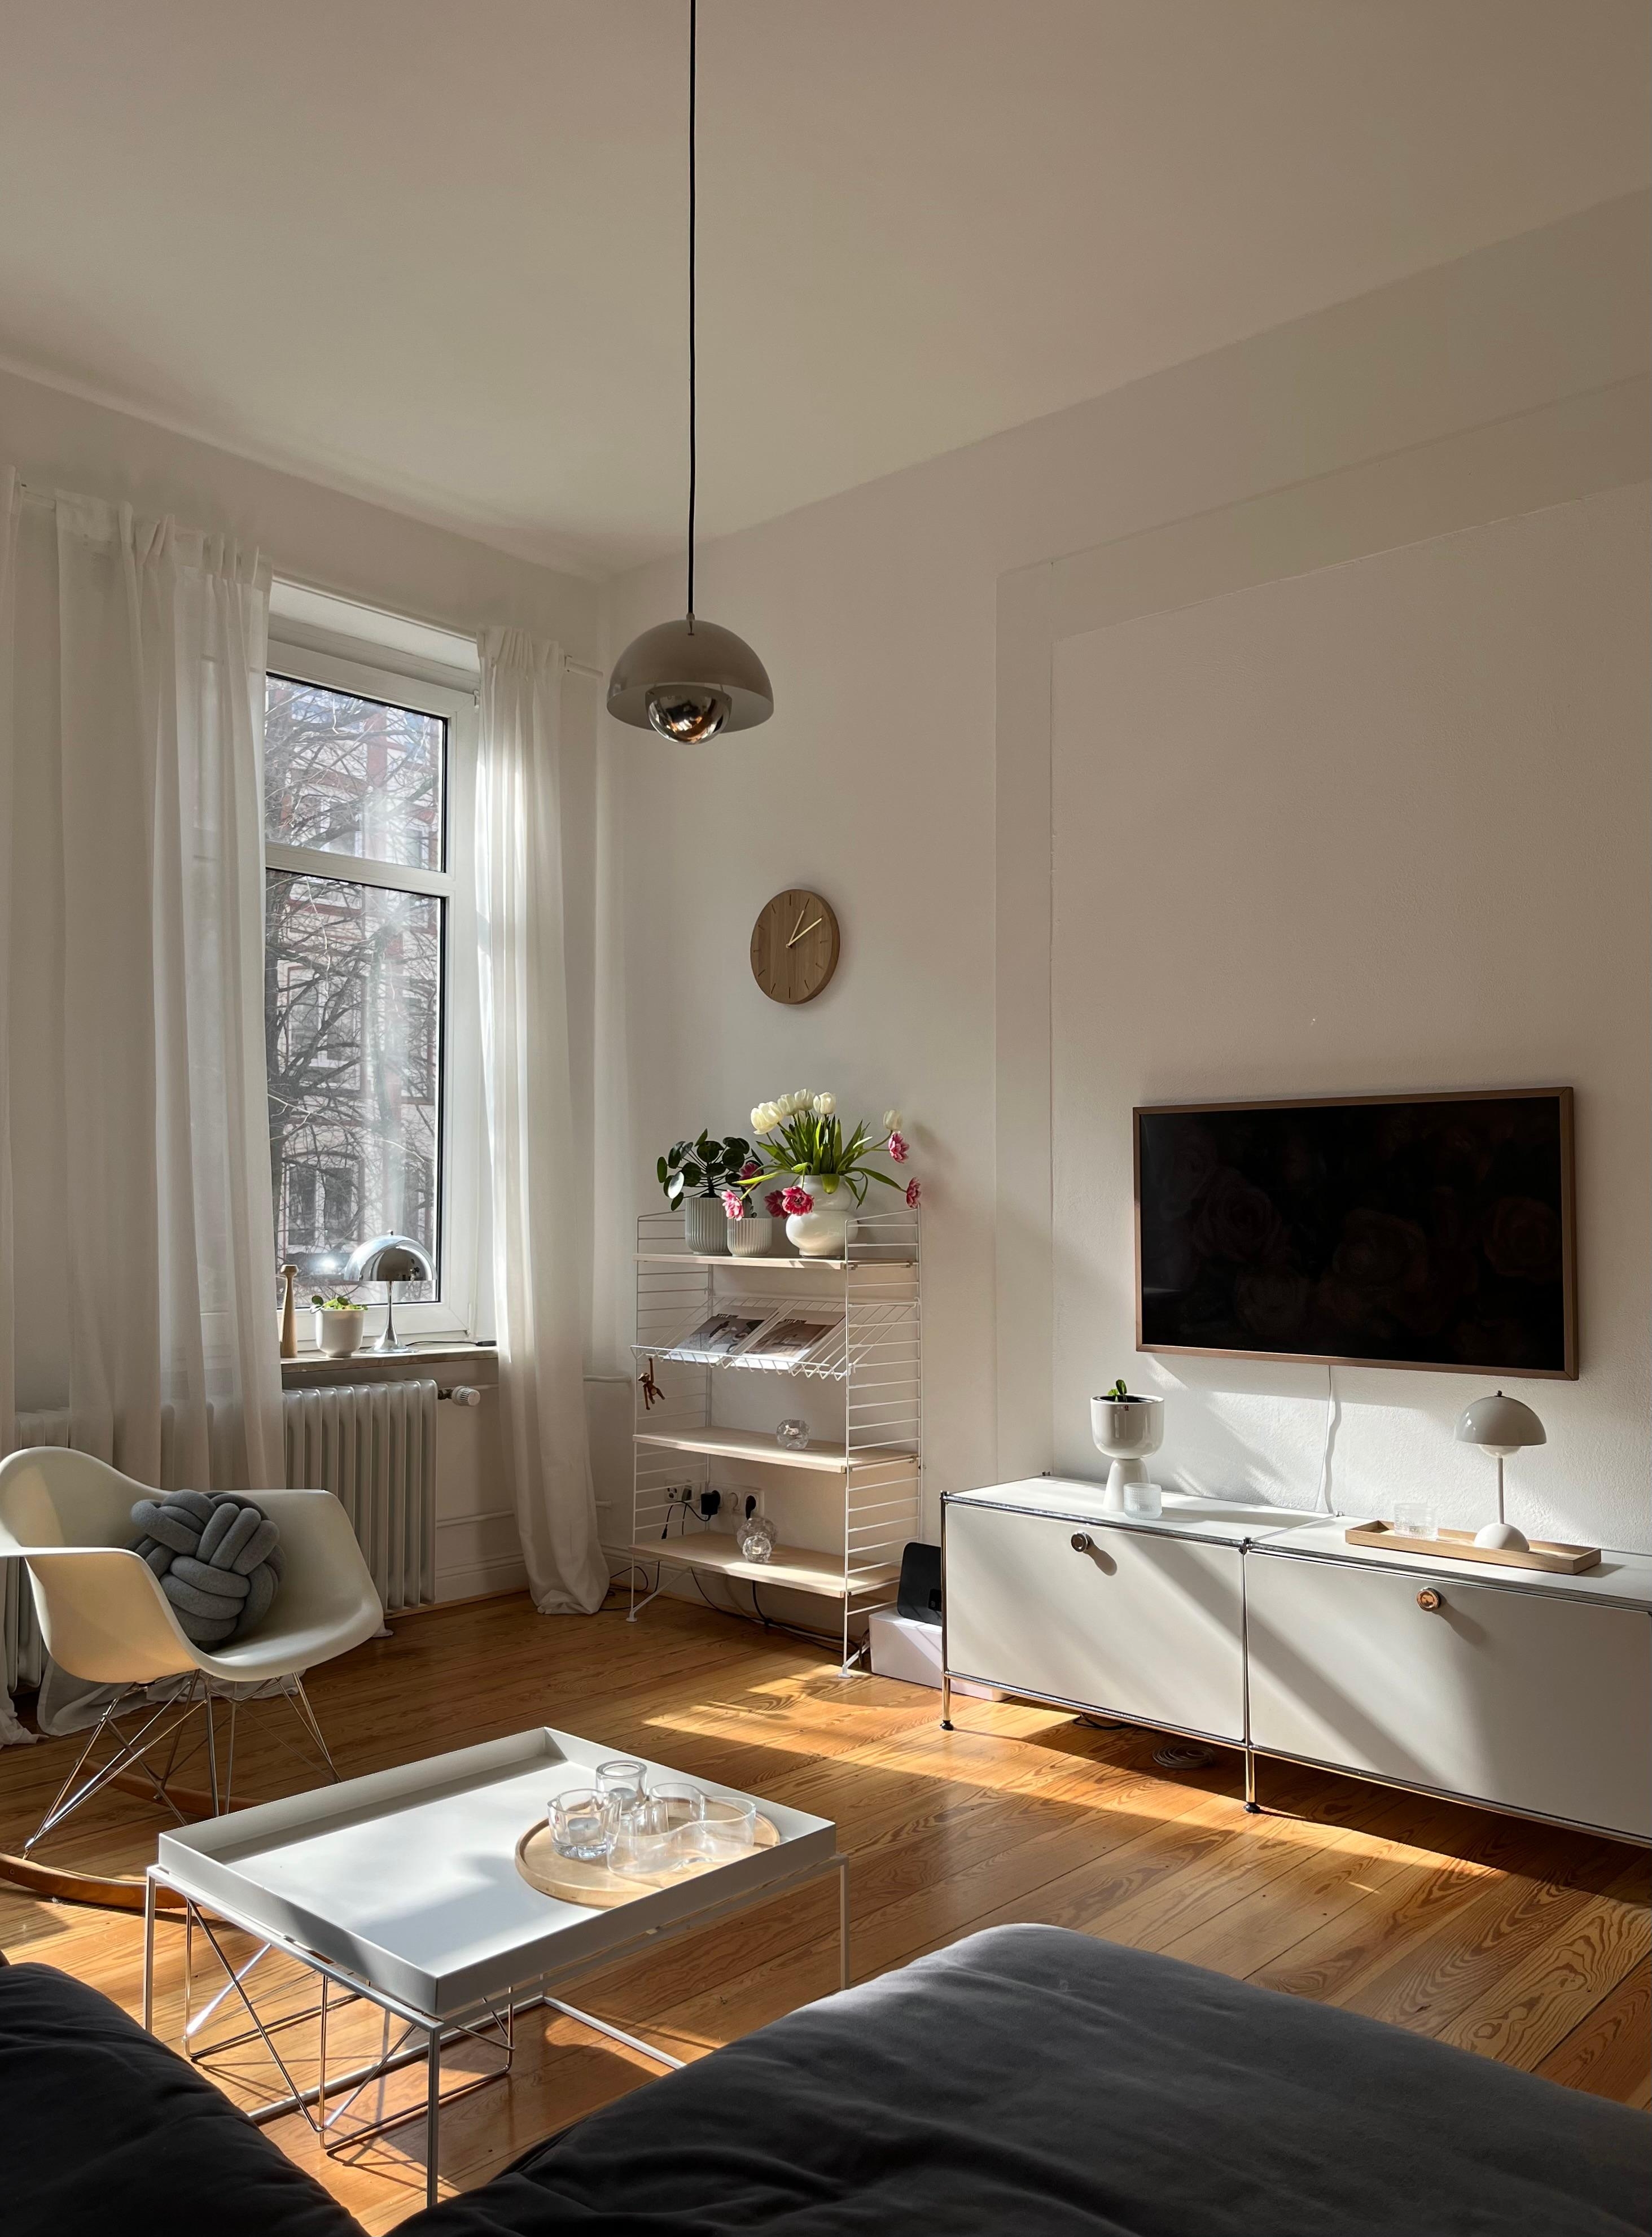 #couchliebt #altbauwohnung #wohnzimmer #springvibes #danishdesign